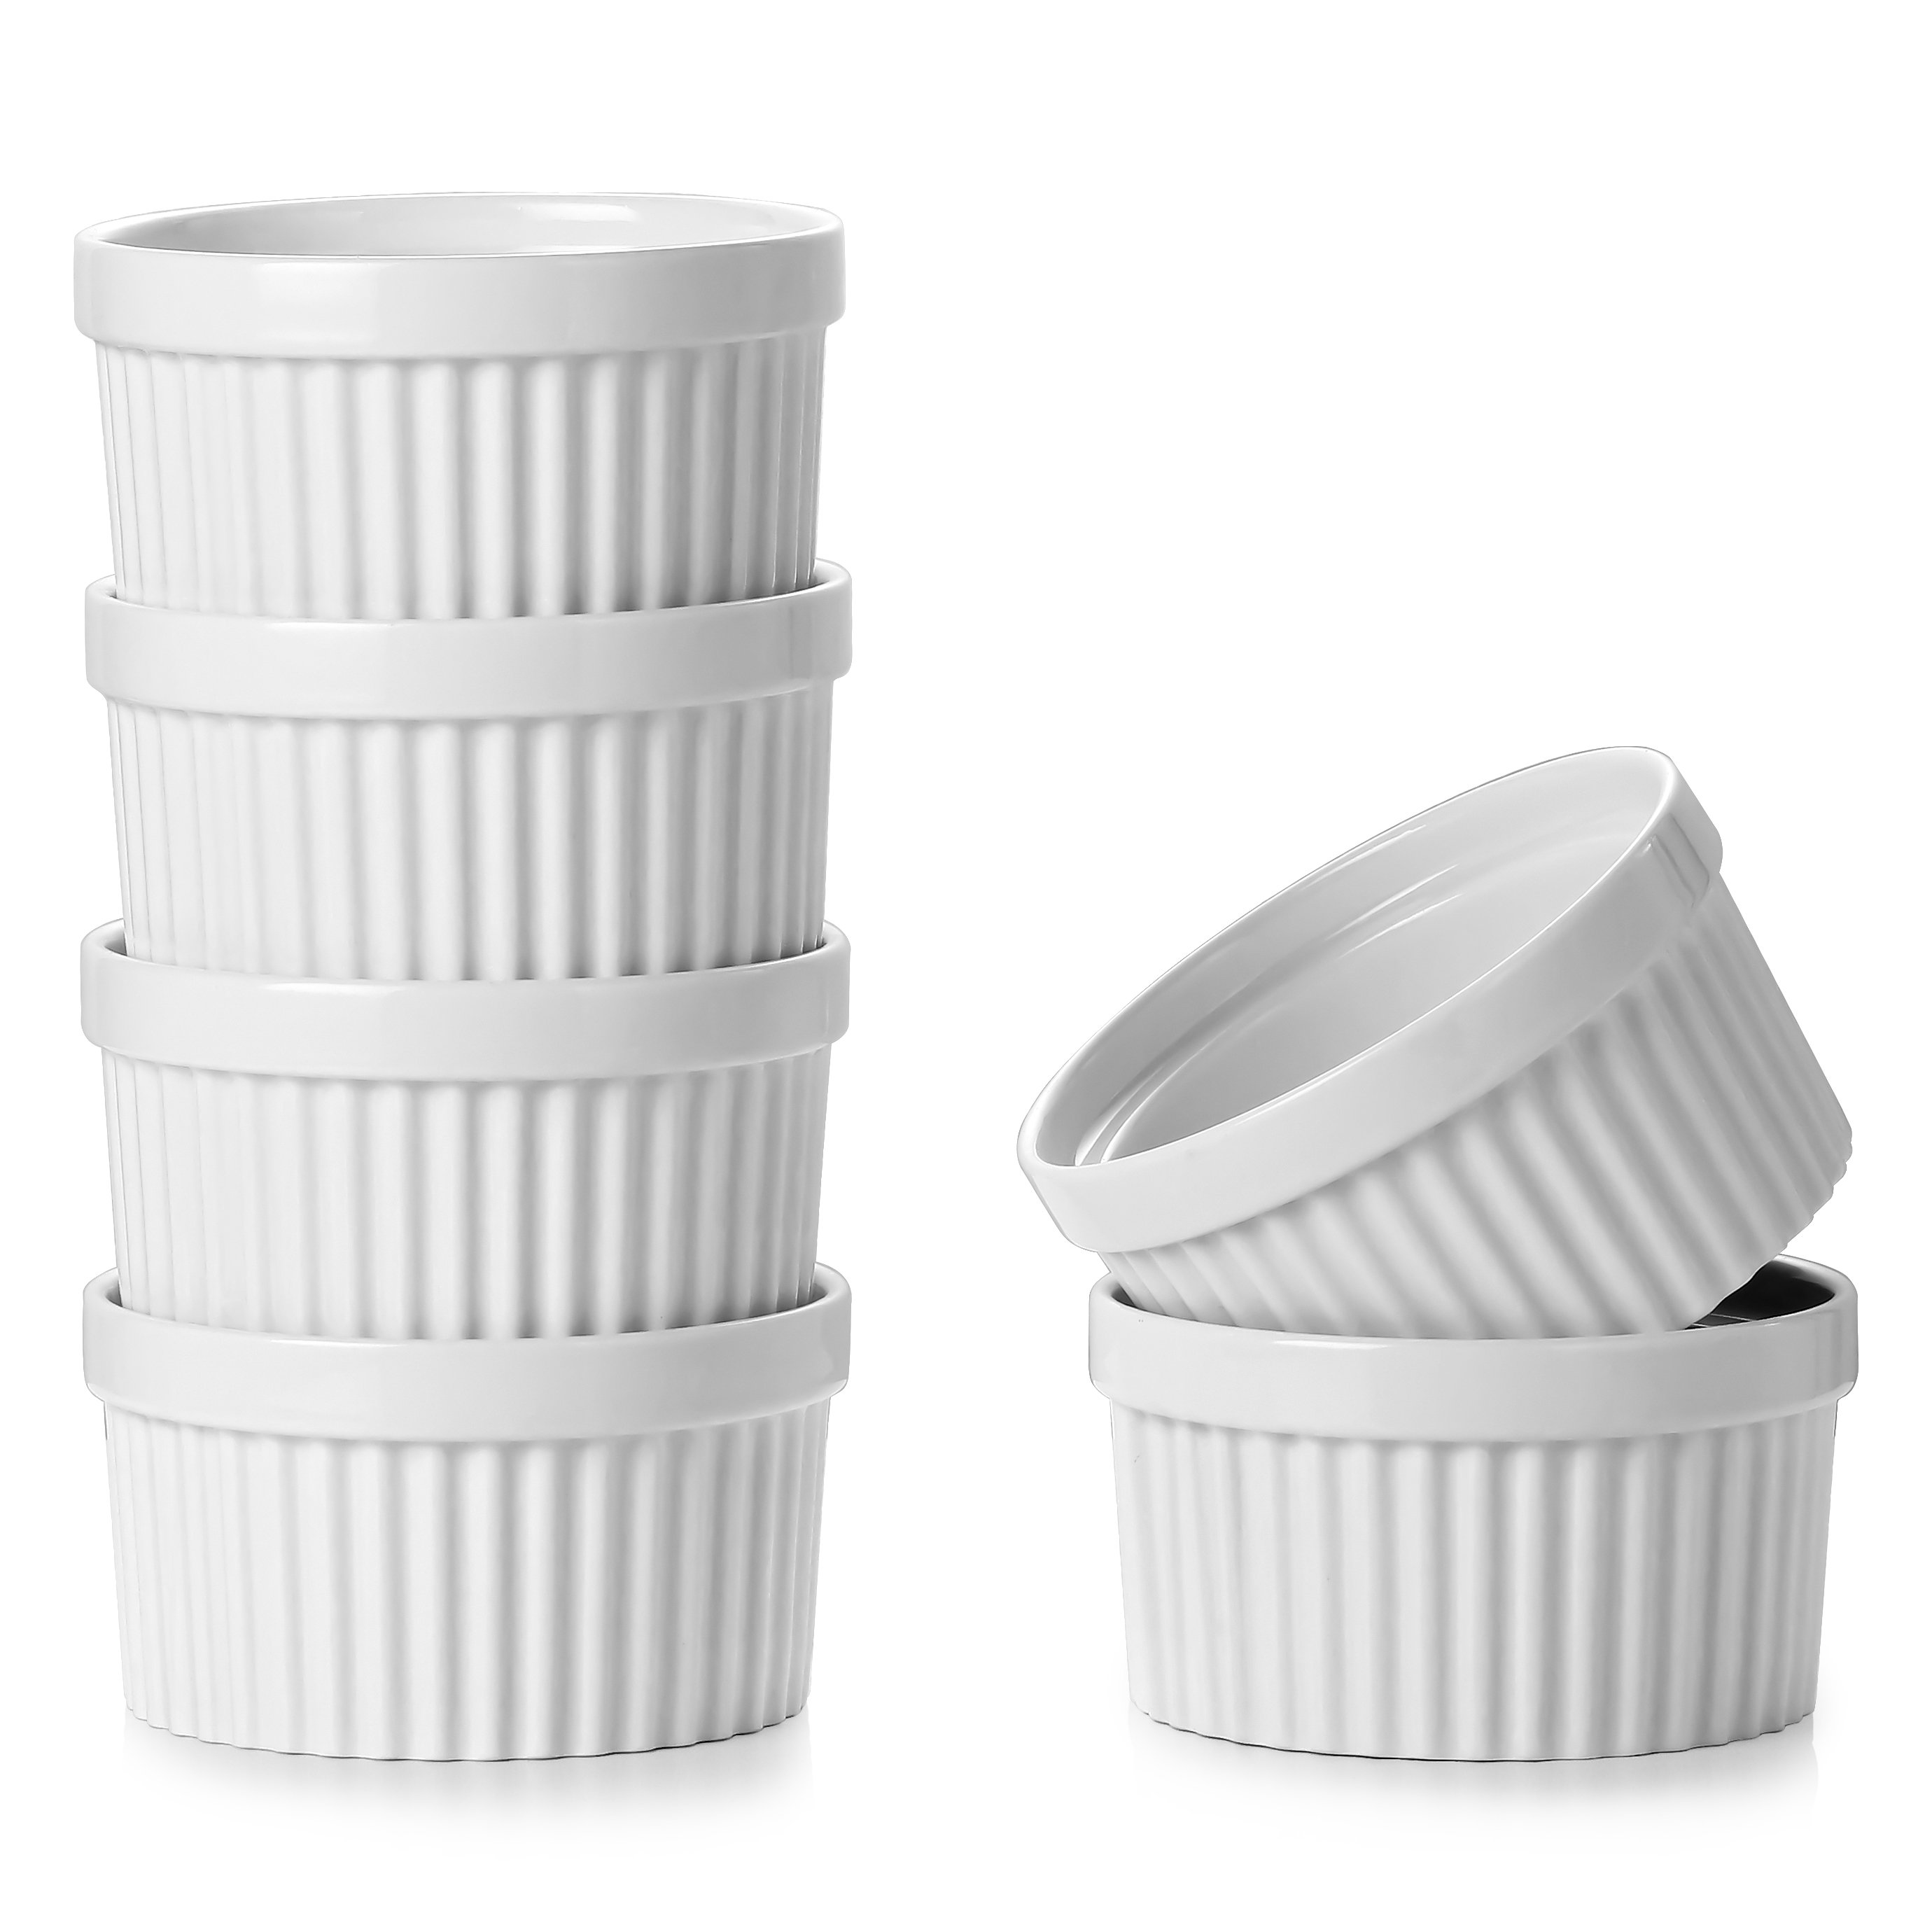 https://assets.wfcdn.com/im/84026110/compr-r85/2294/229421309/10-oz-white-ceramic-ramekins-for-creme-brulee-set-of-6.jpg